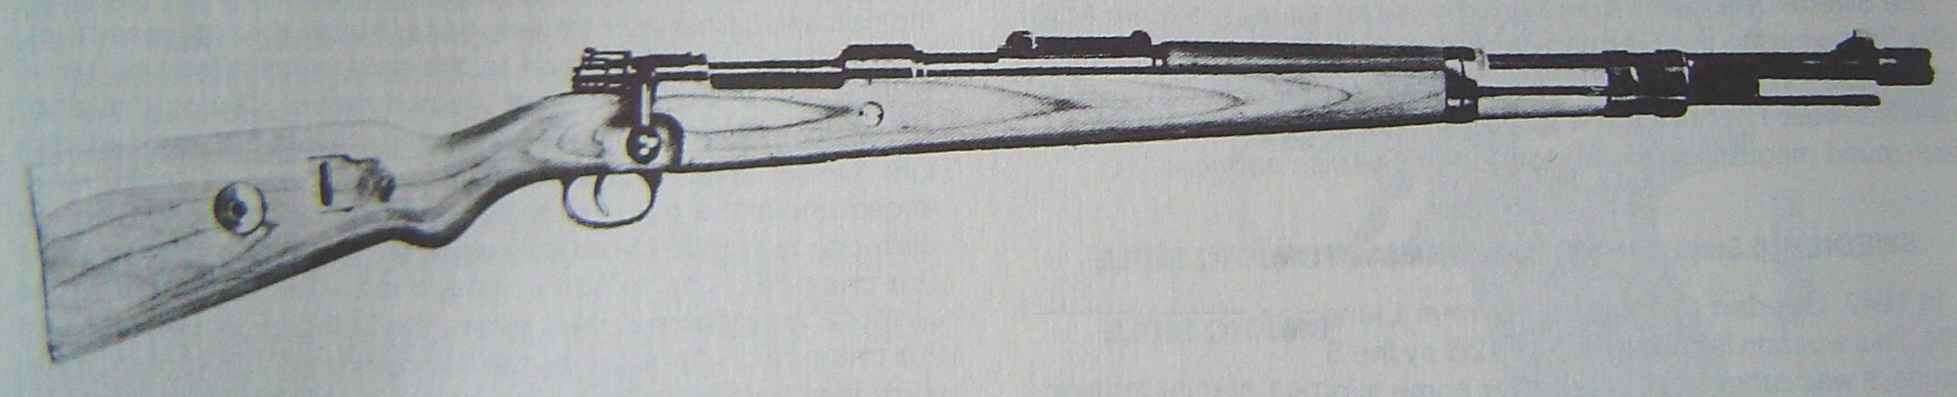 Mauser m/40